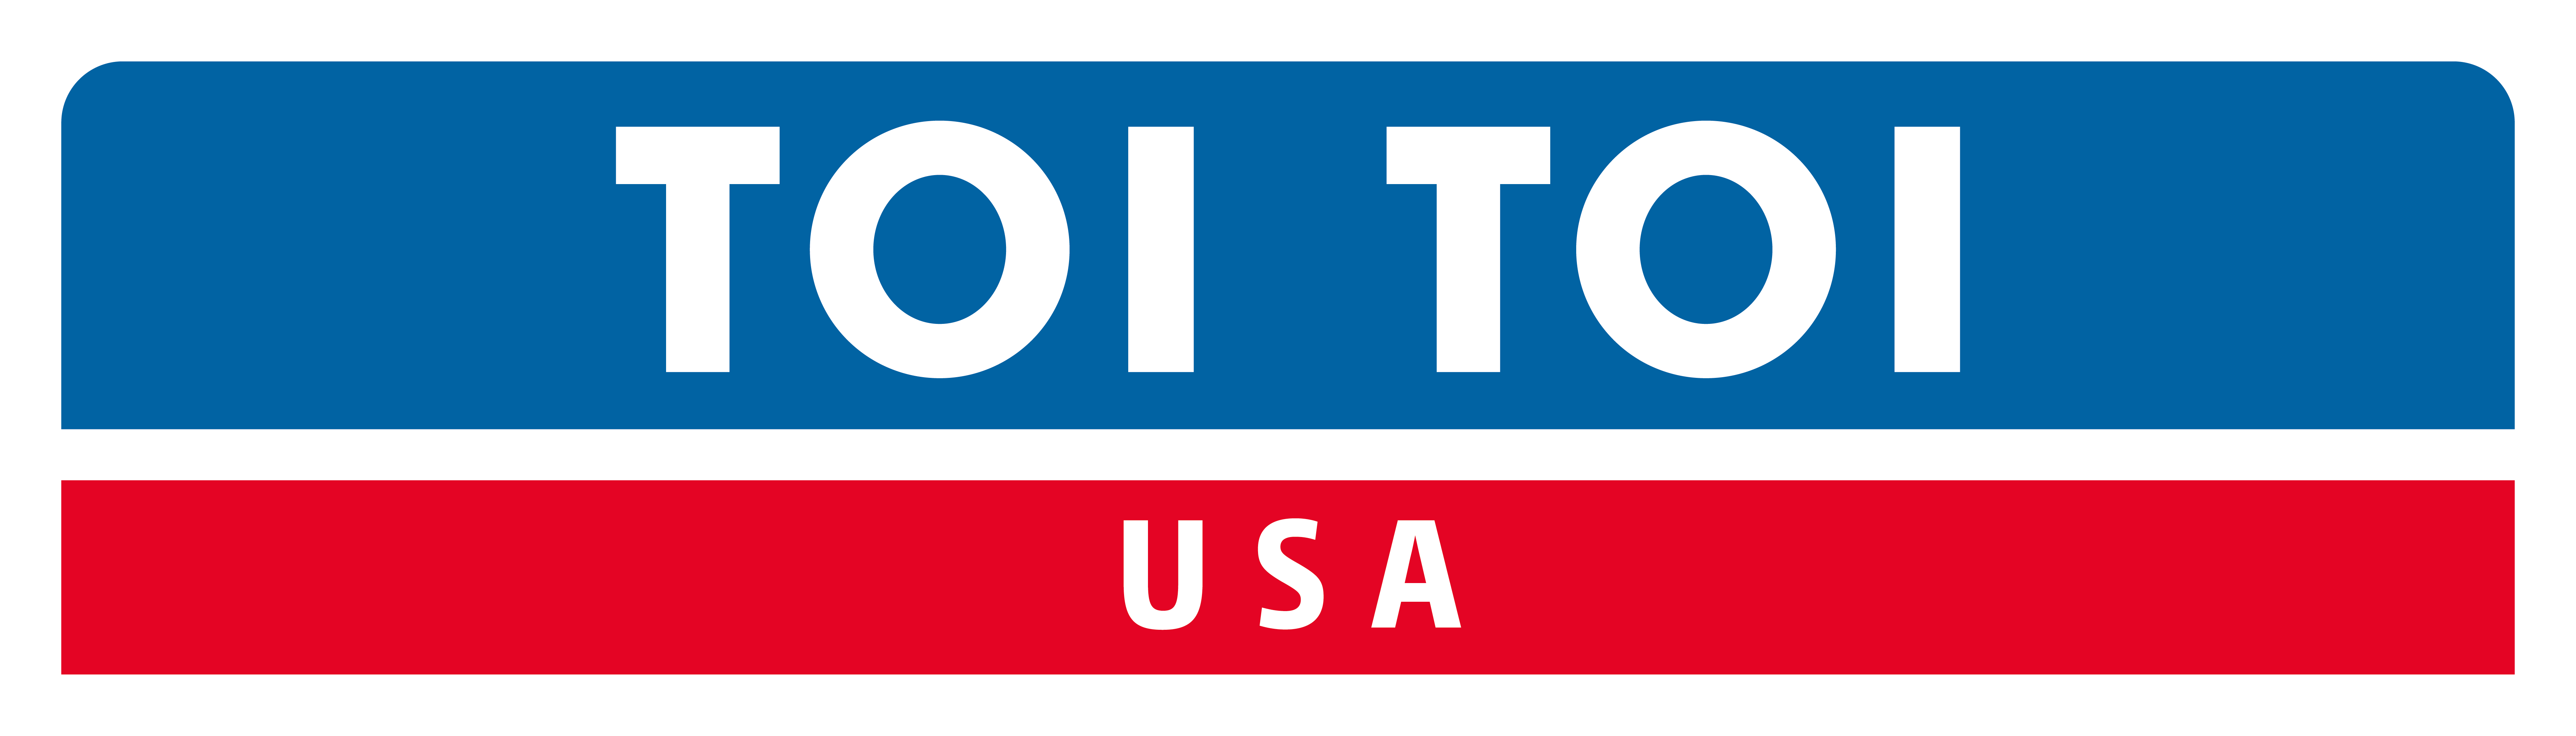 Sponsor TOI TOI USA